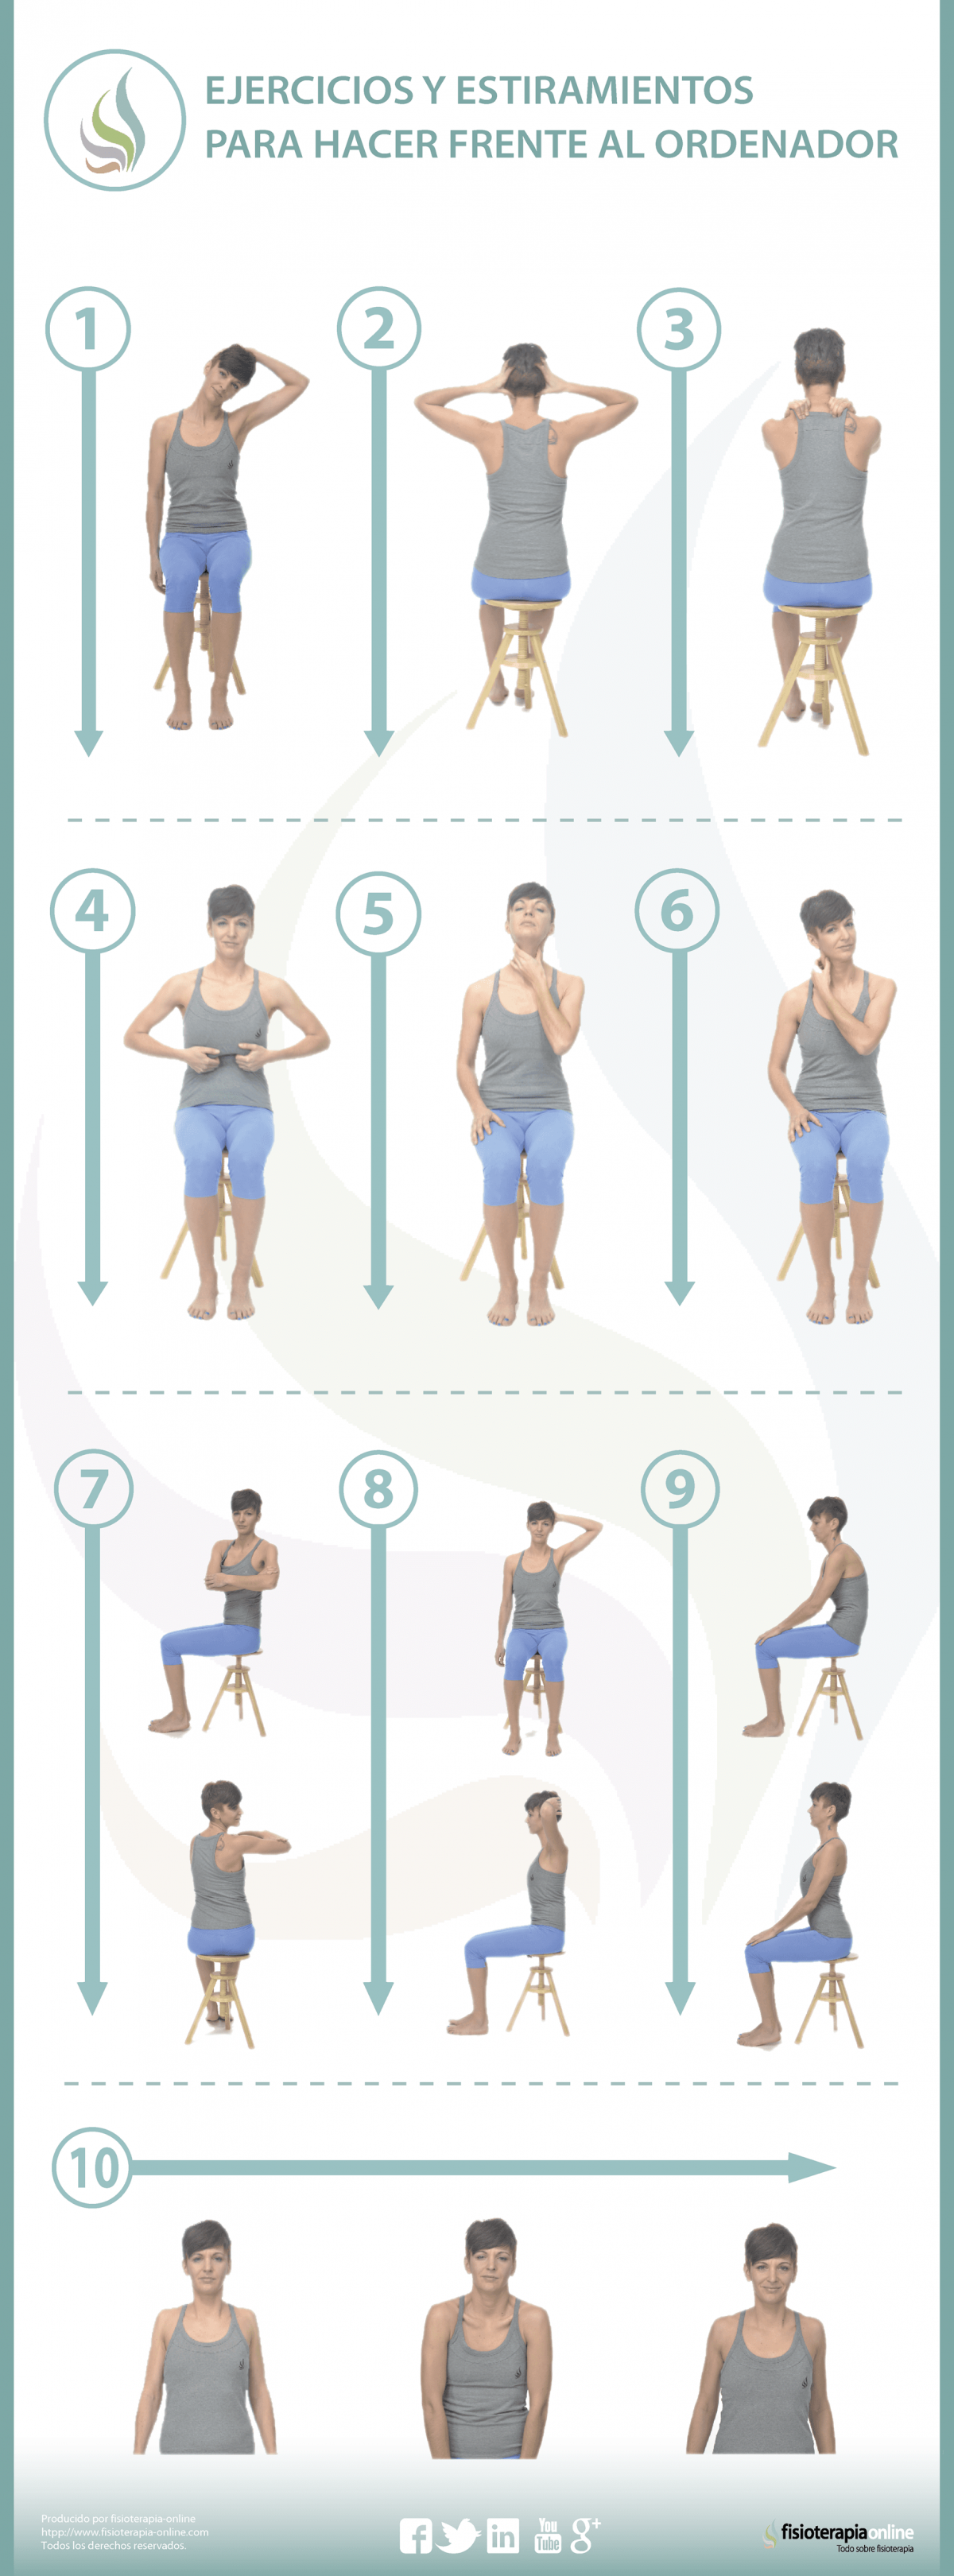 10 ejercicios para hacer frente al ordenador y cuidar tu espalda